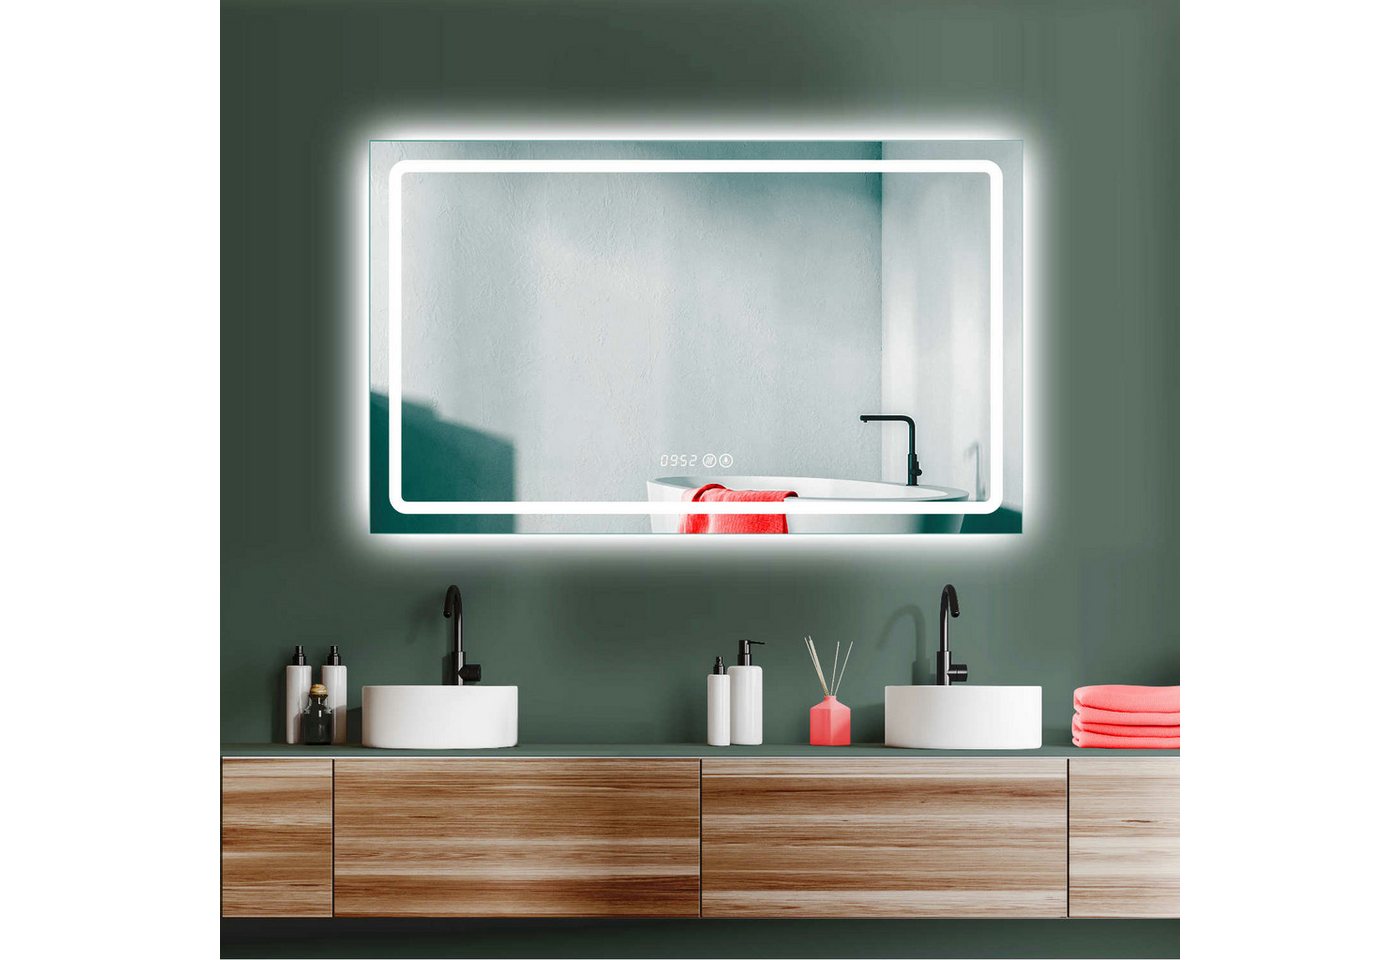 HOKO Badspiegel ANTIBESCHLAG großer LED Badspiegel 100x60 cm + Uhr + Lichtwechsel (Warmweiß - Kaltweiß - Neutral. Licht mit Touch Schalter und mit Wandschalter einschaltbar. Memory-Funktion.IP44, 5mm HD Glass) von HOKO